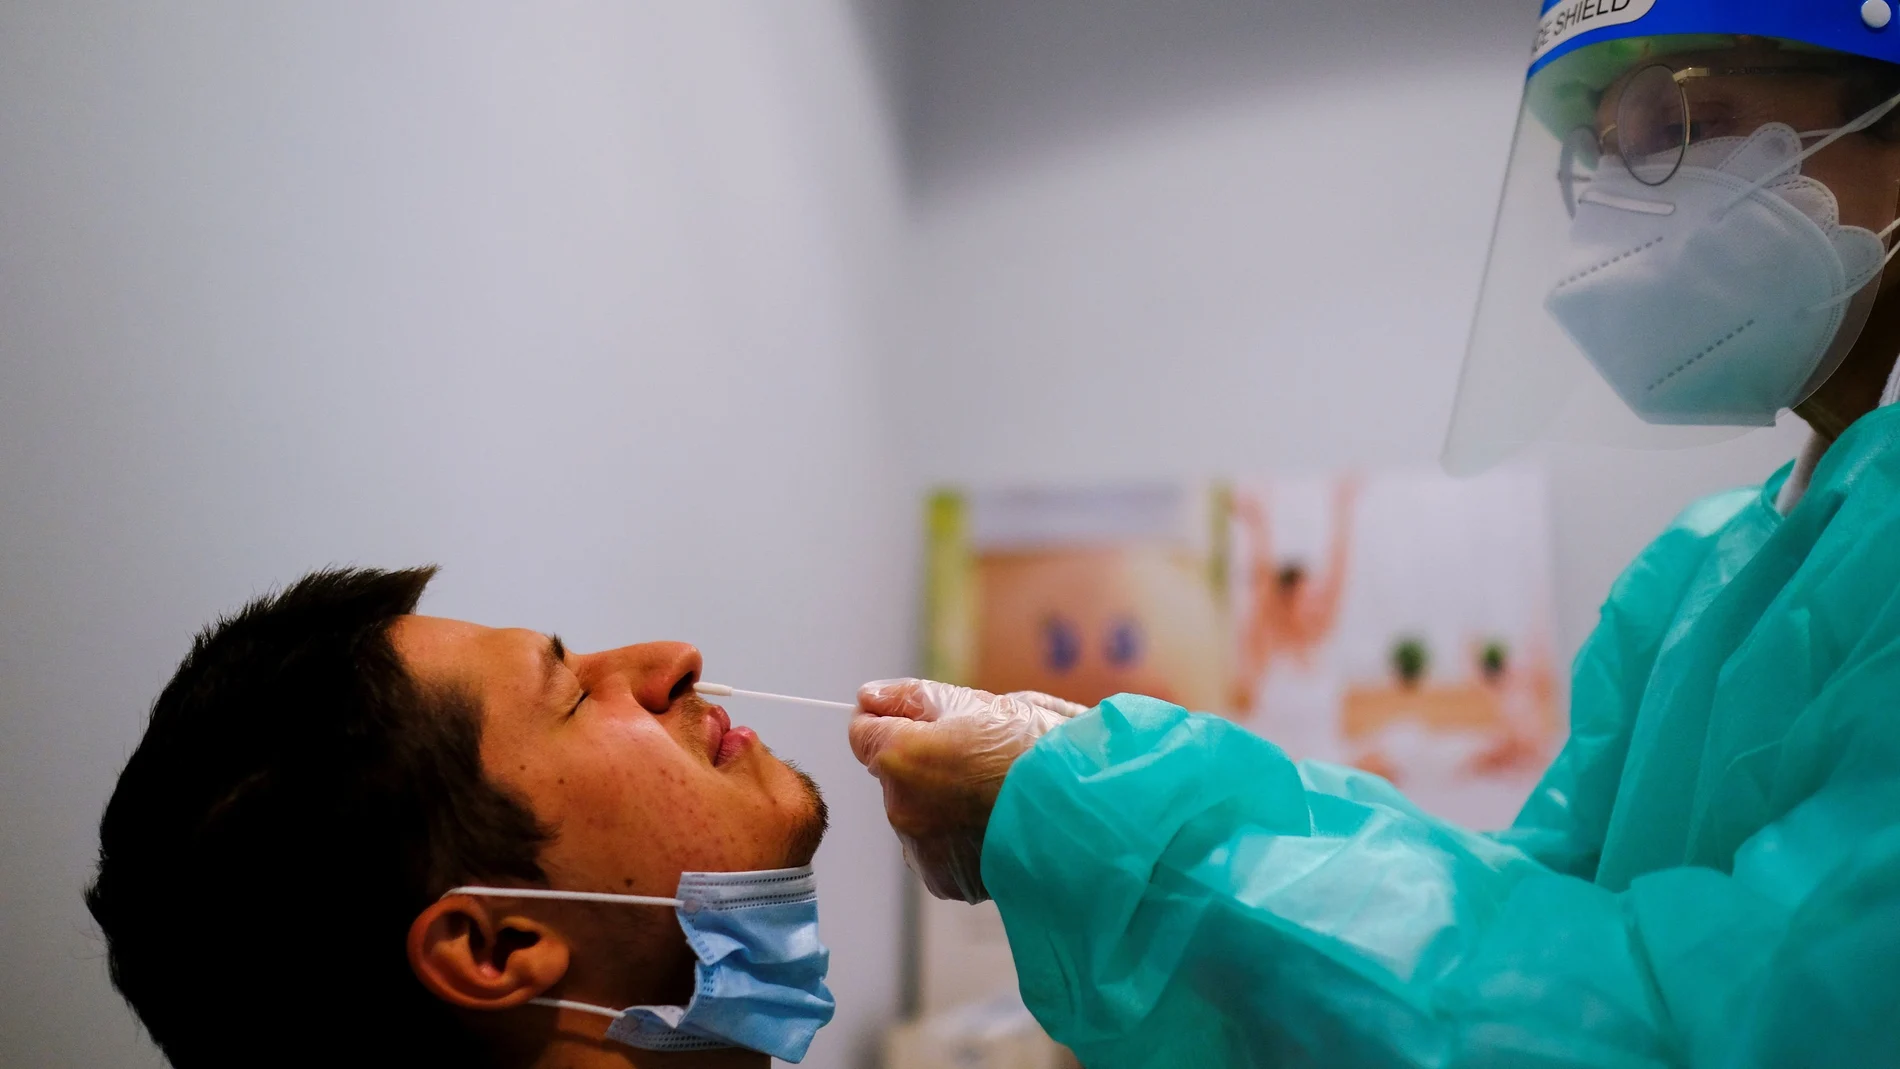 Con este test se evitan las molestias que supone para el paciente la toma nasofaríngea, ya que el hisopo o bastoncillo se introduce en la parte delantera de la nariz, no como el actual